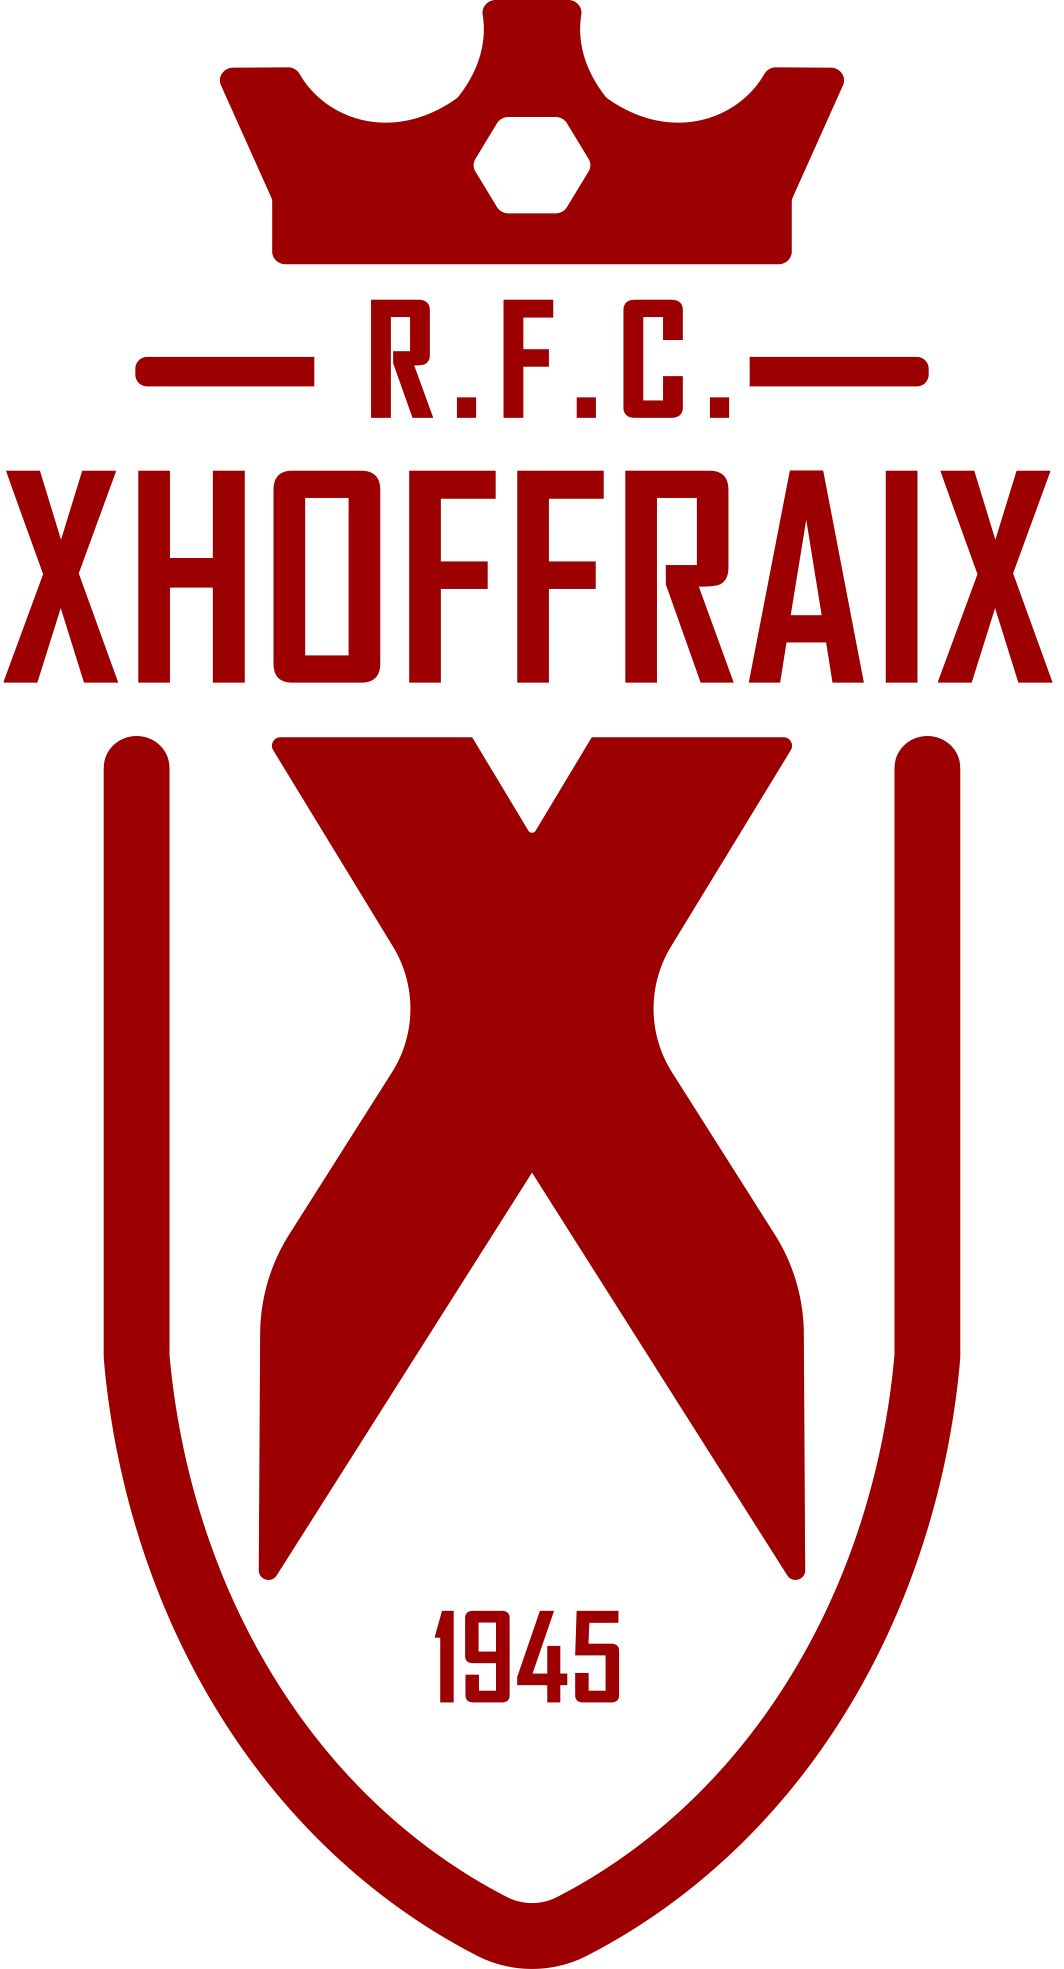 3 - R.F.C. Xhoffraix